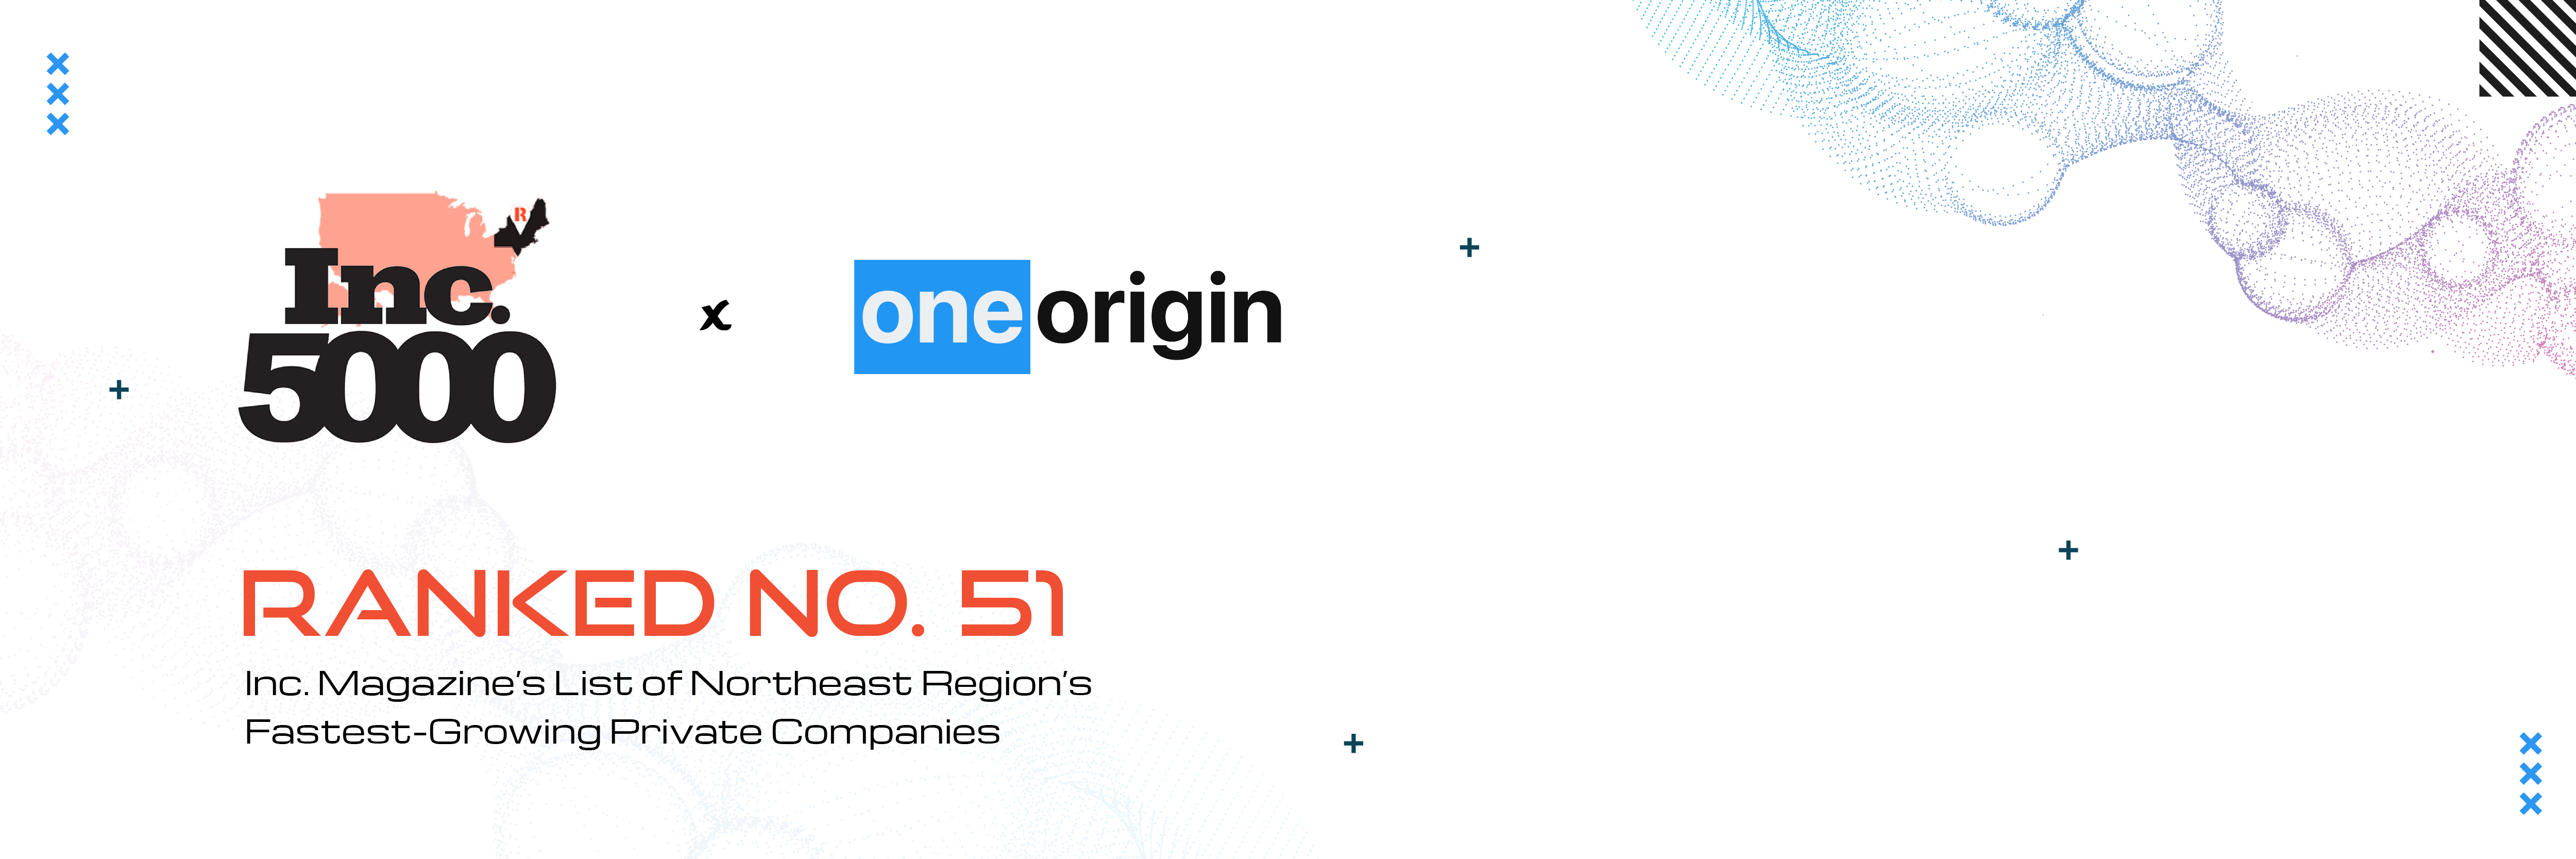 OneOrigin has been ranked no. 51 on Inc. 5000 list